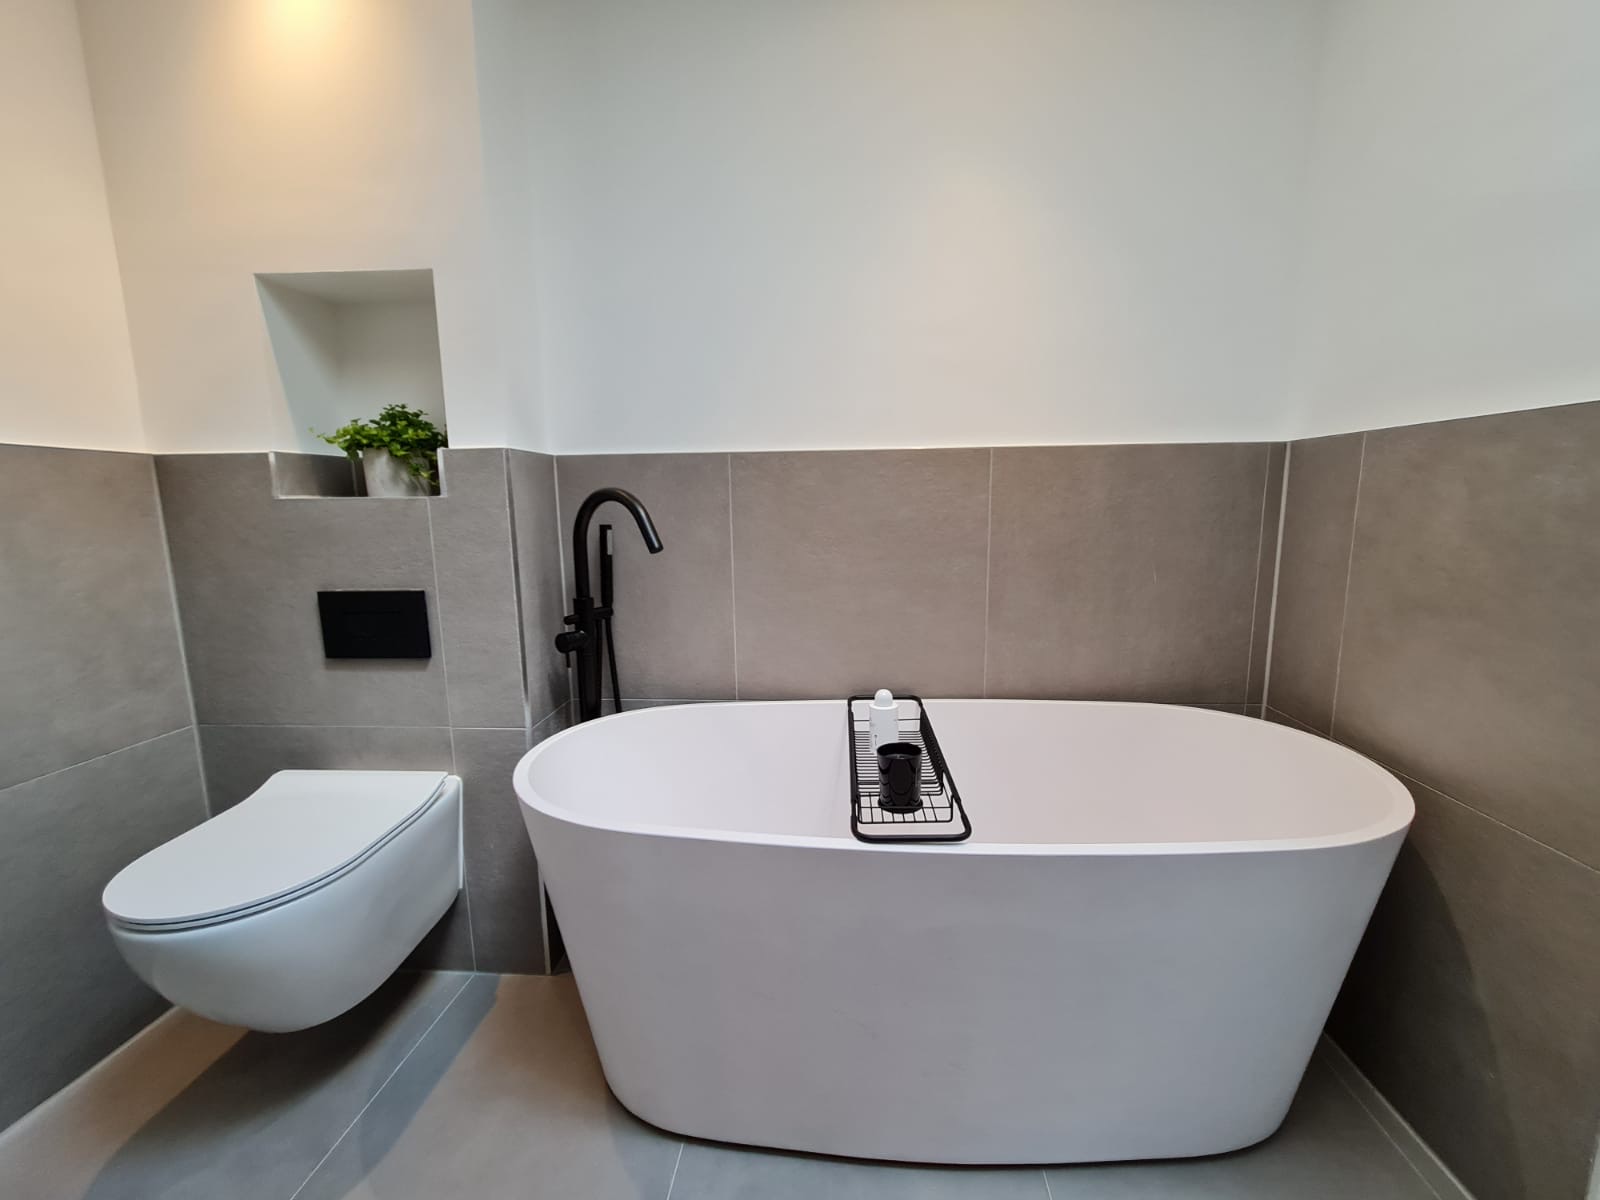 Bathroom Installers in London